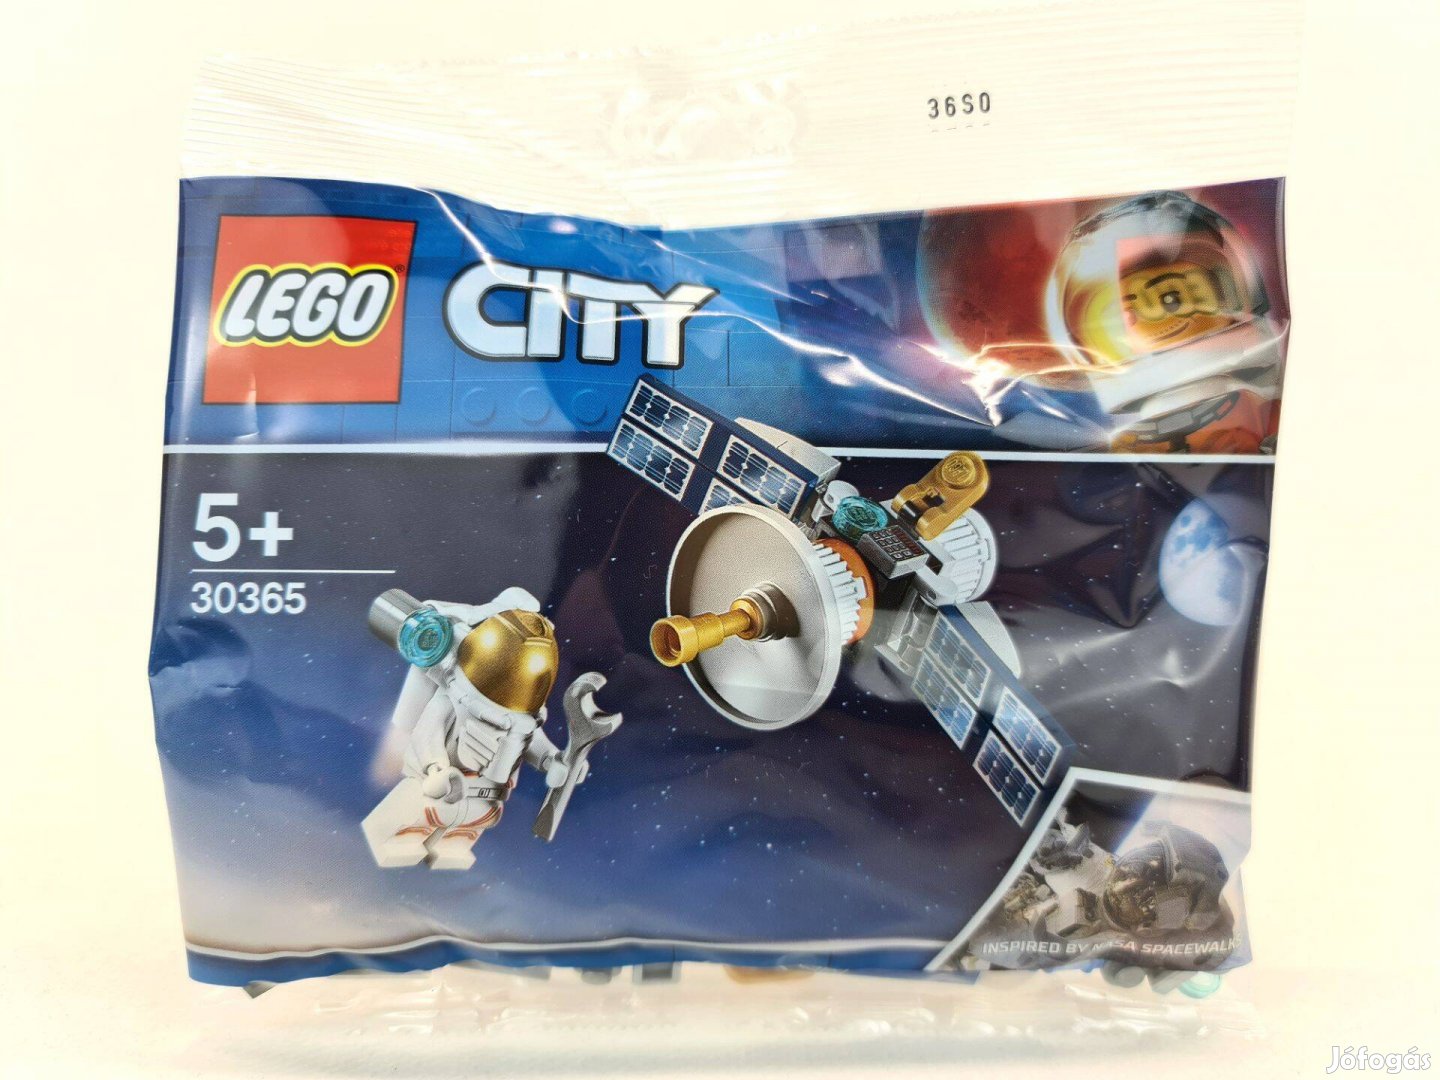 30365 Lego City Műhold polybag Új, bontatlan